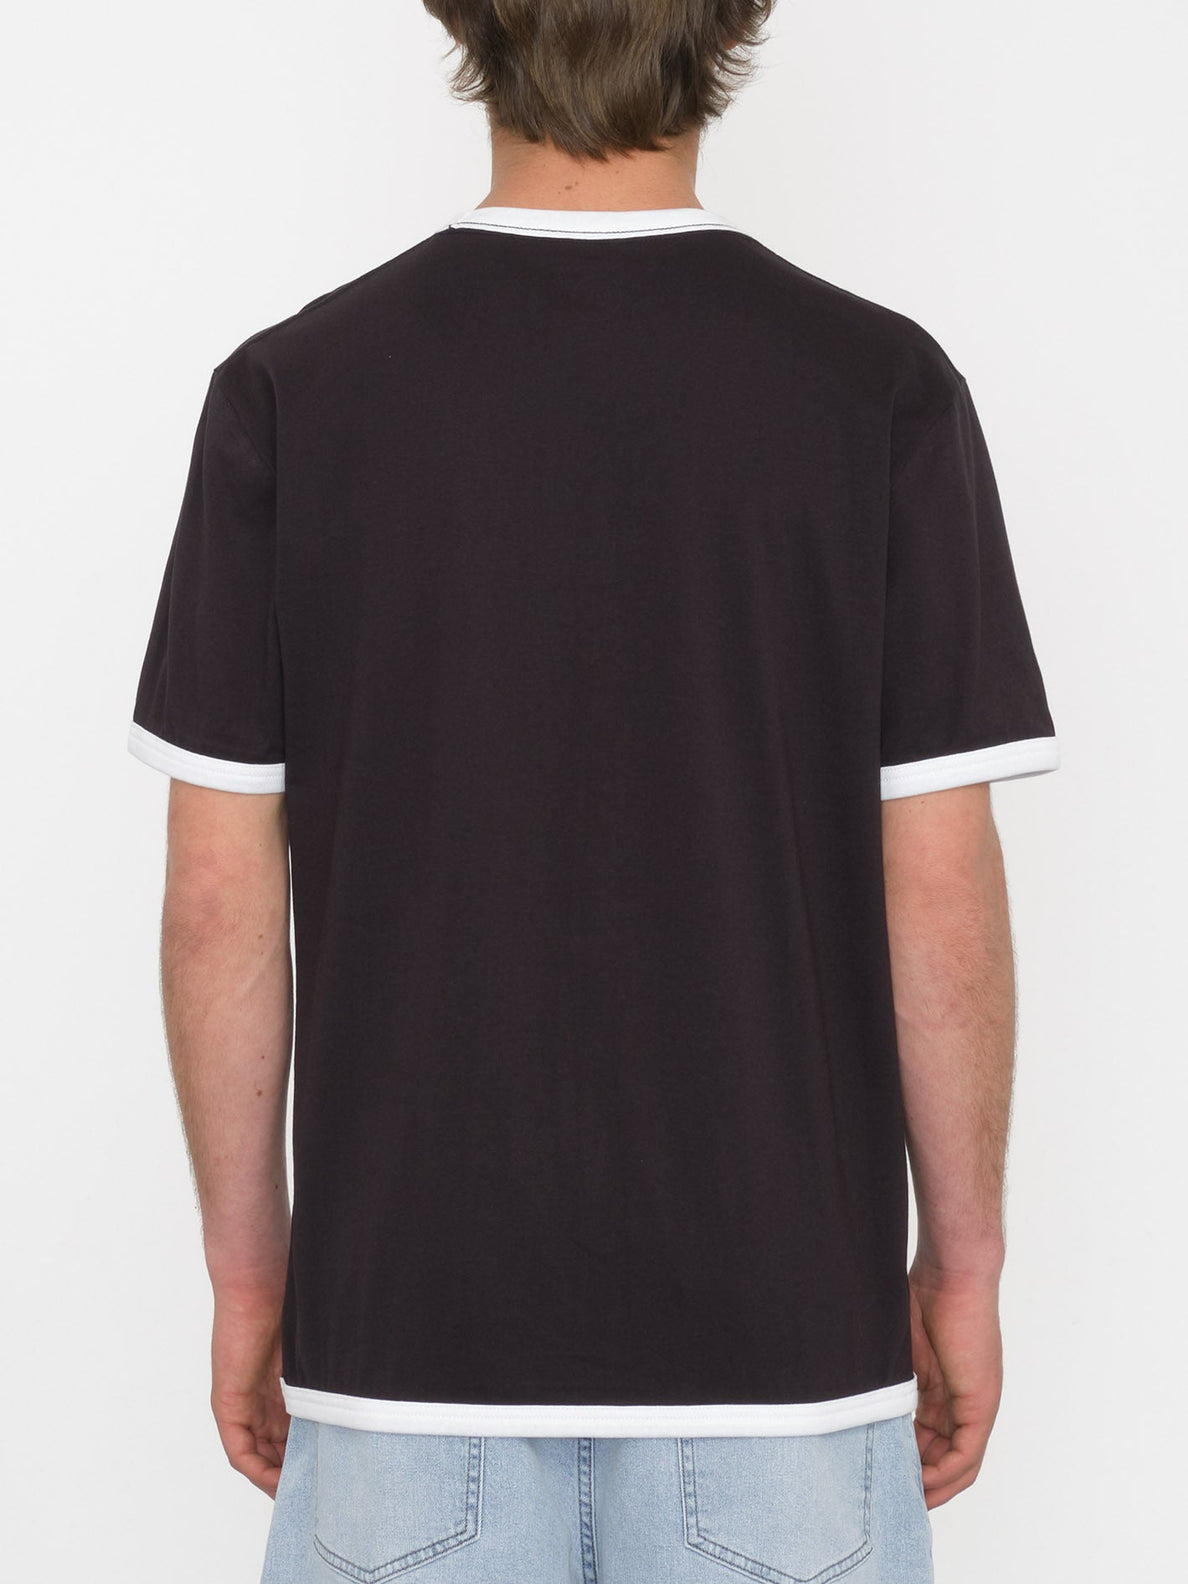 T-shirt Fullring Ringer - BLACK